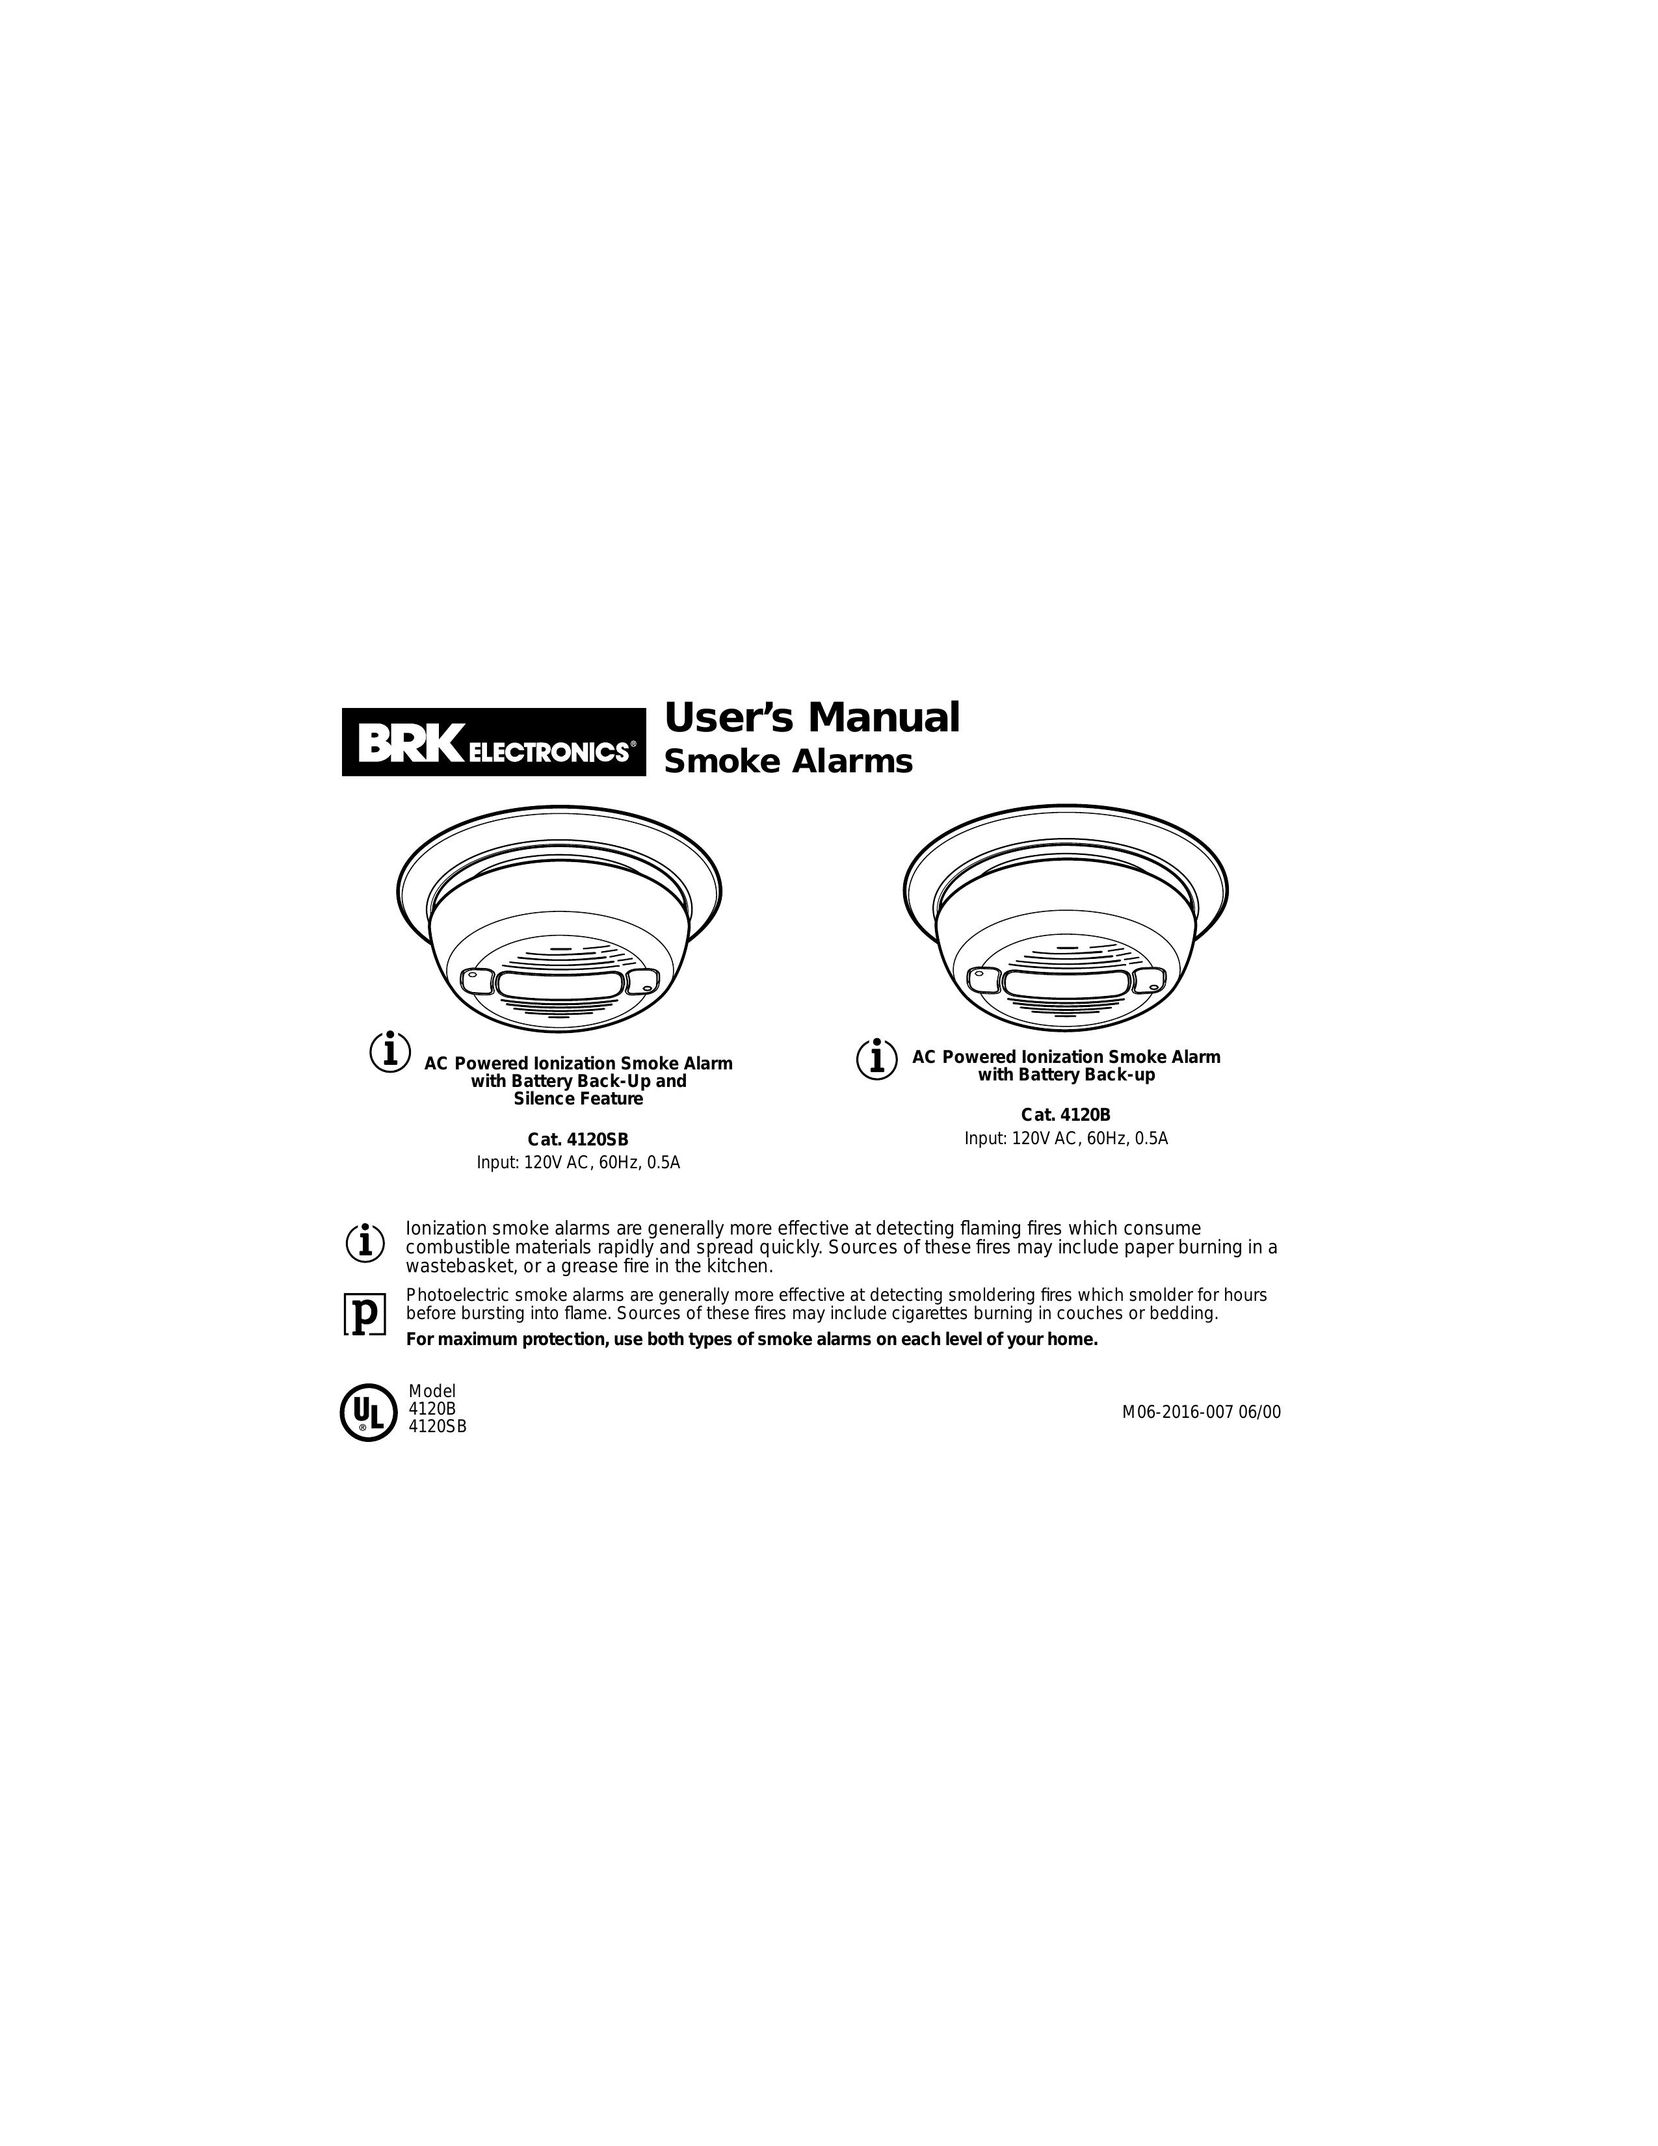 BRK electronic 4120B Smoke Alarm User Manual